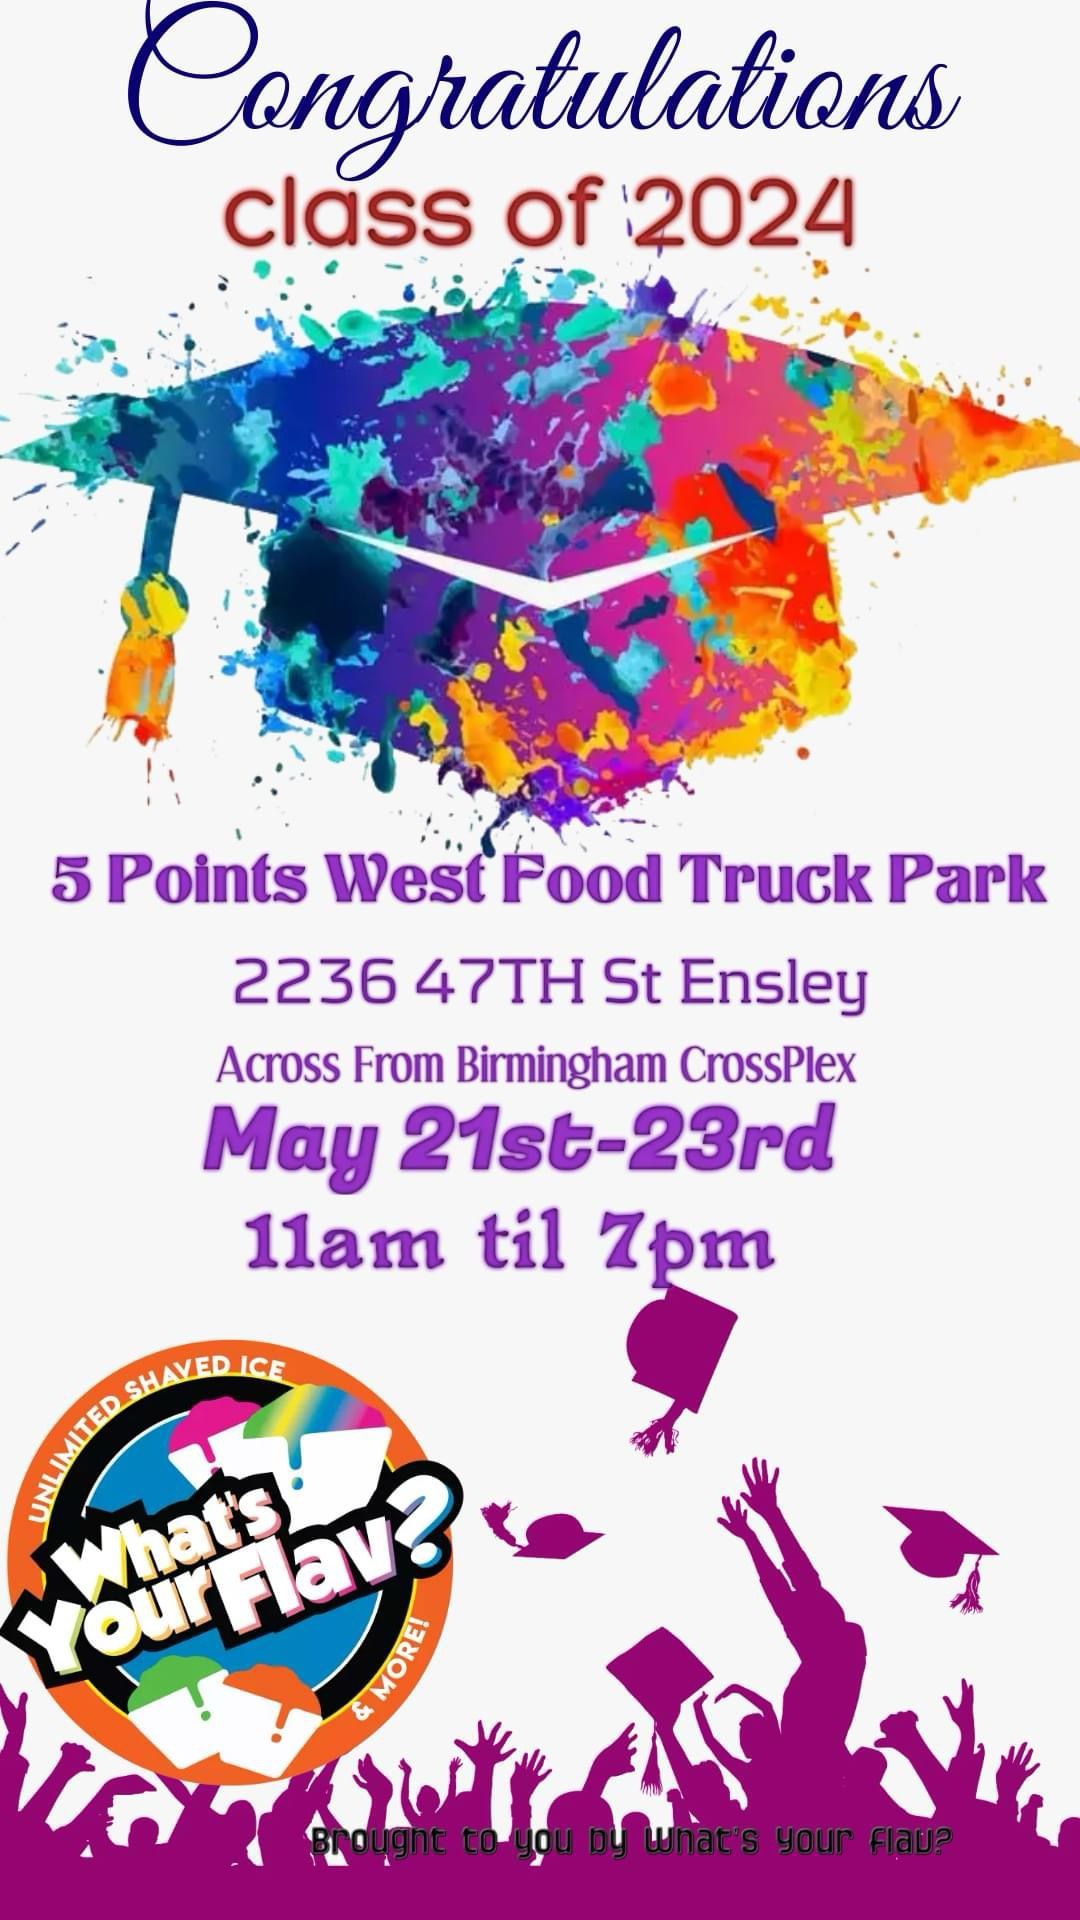 5 Points West Food Truck Park